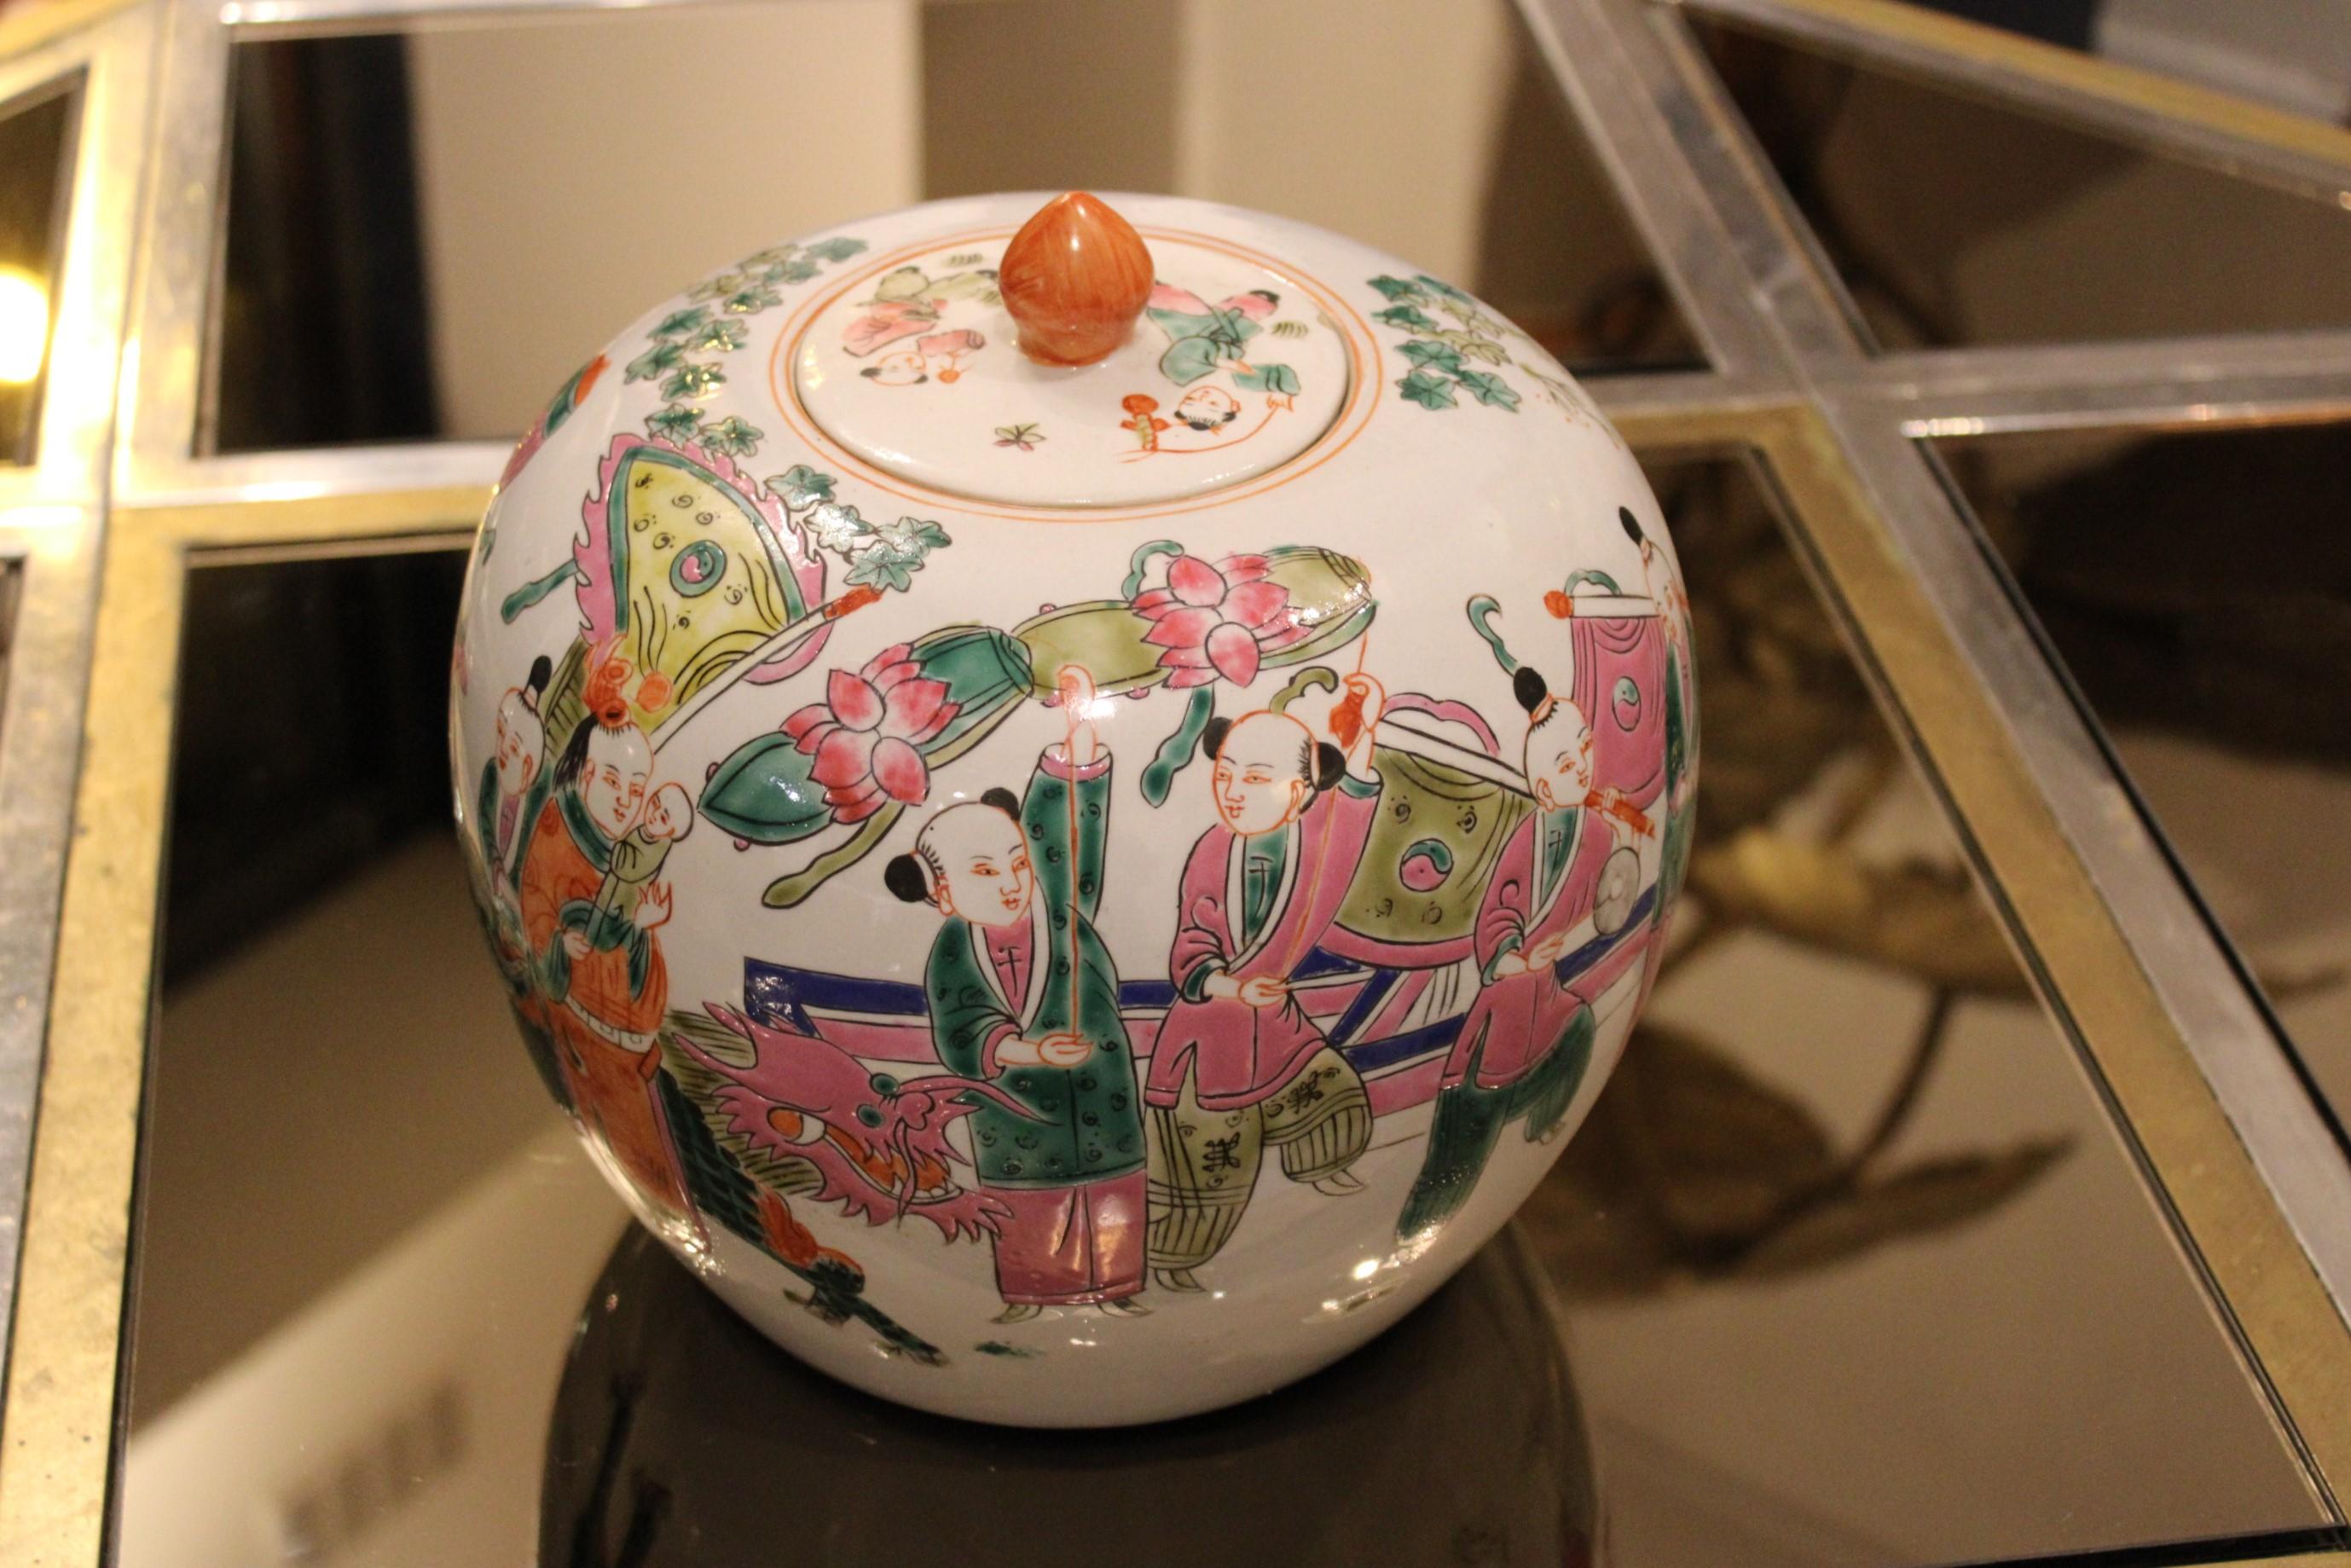 Ingwerdose aus Porzellan, mit Deckel.
Zeichen Dekor
China, 20. Jahrhundert